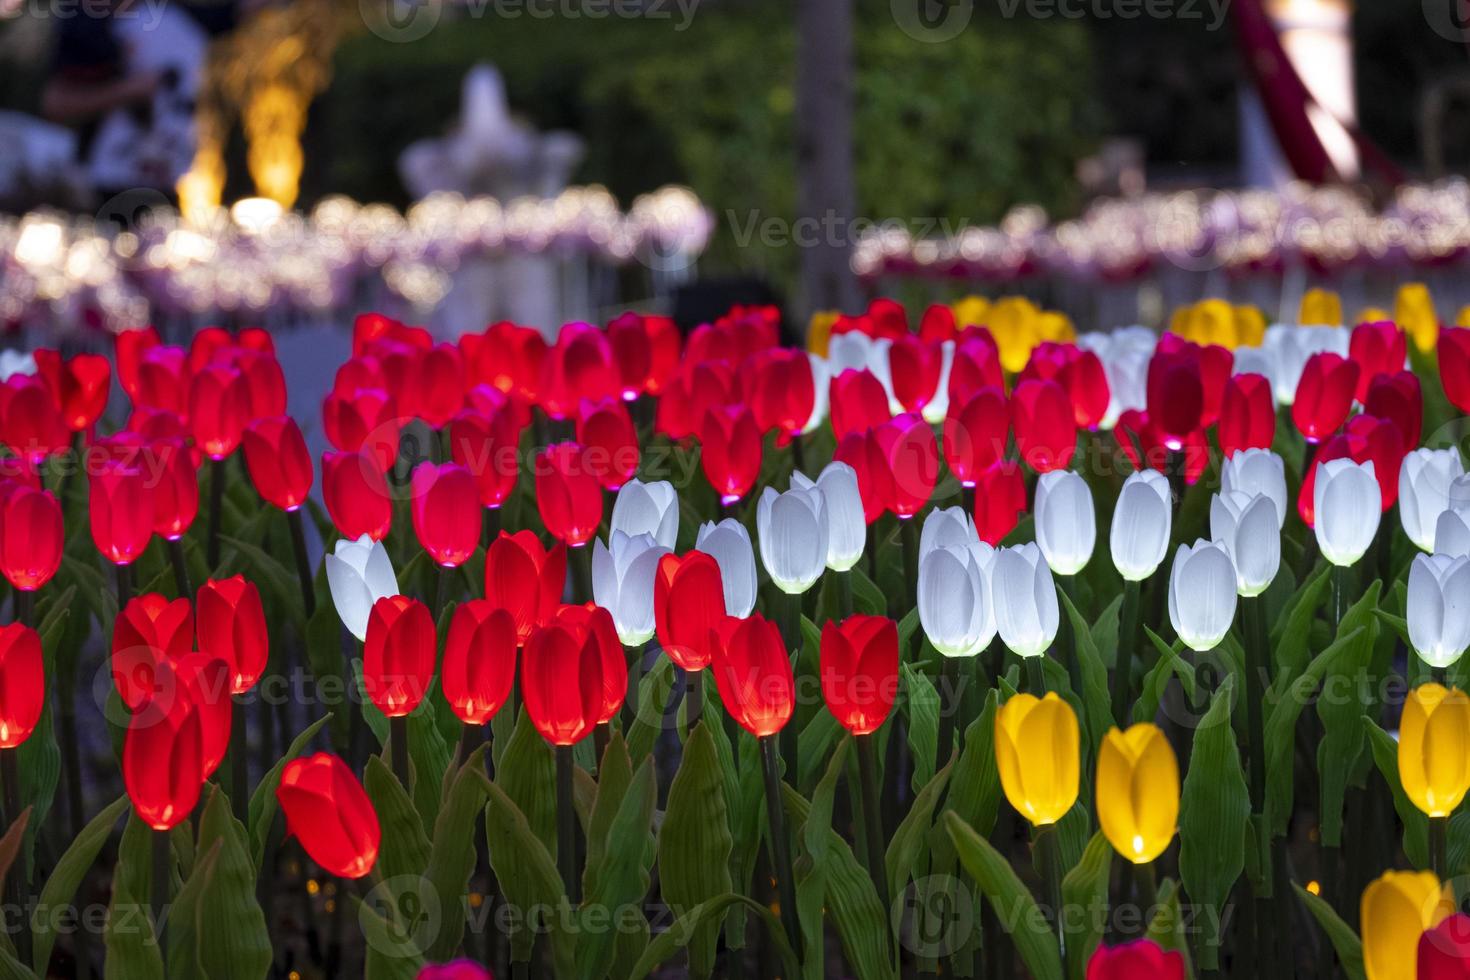 show de festival de luz de lanternas tulipas vermelhas e brancas falsificadas energia da flor eletricidade fluorescente aura brilham no jardim de botânica. foto